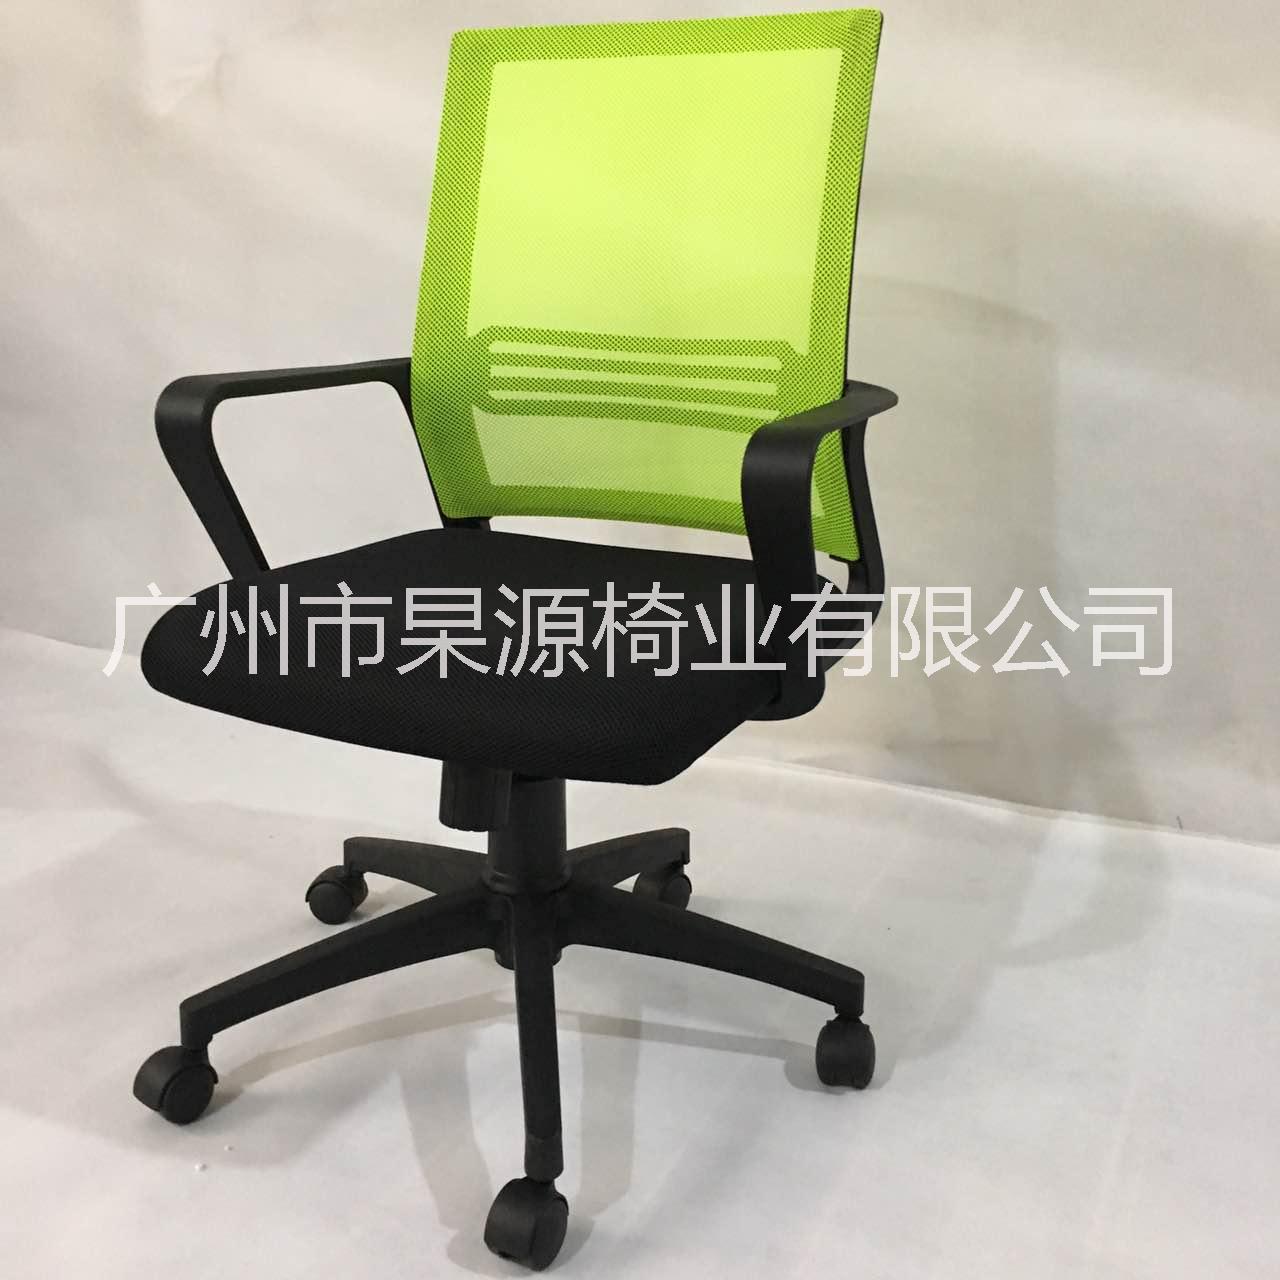 广州办公网椅批发商家 特价网布椅 特价办公椅 特价沙发 软体家具定制厂家